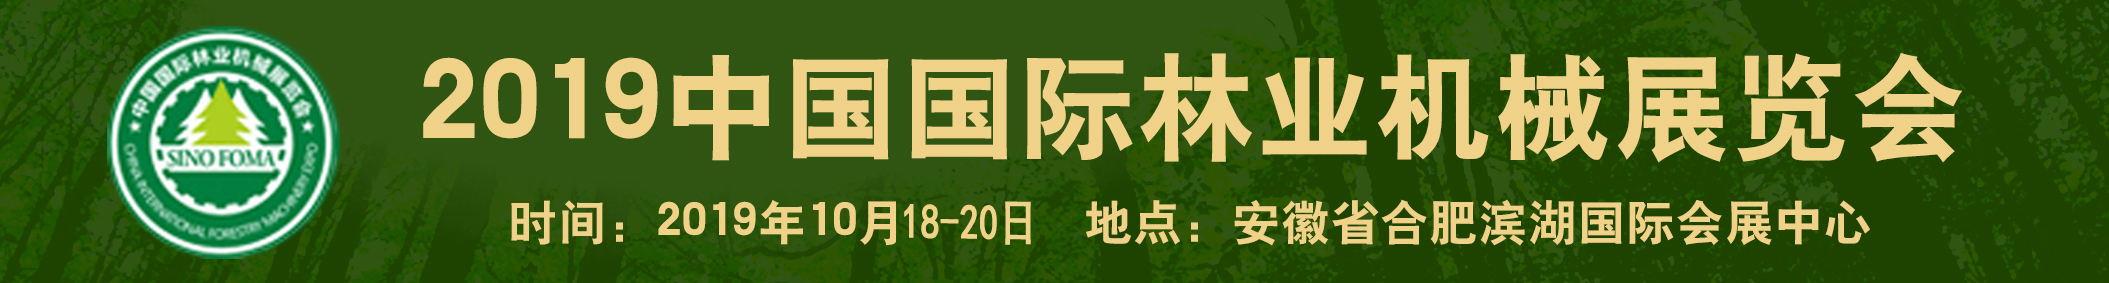 森林防火装备展2019中国国际林业机械展览会暨中国国际智慧林业博览会